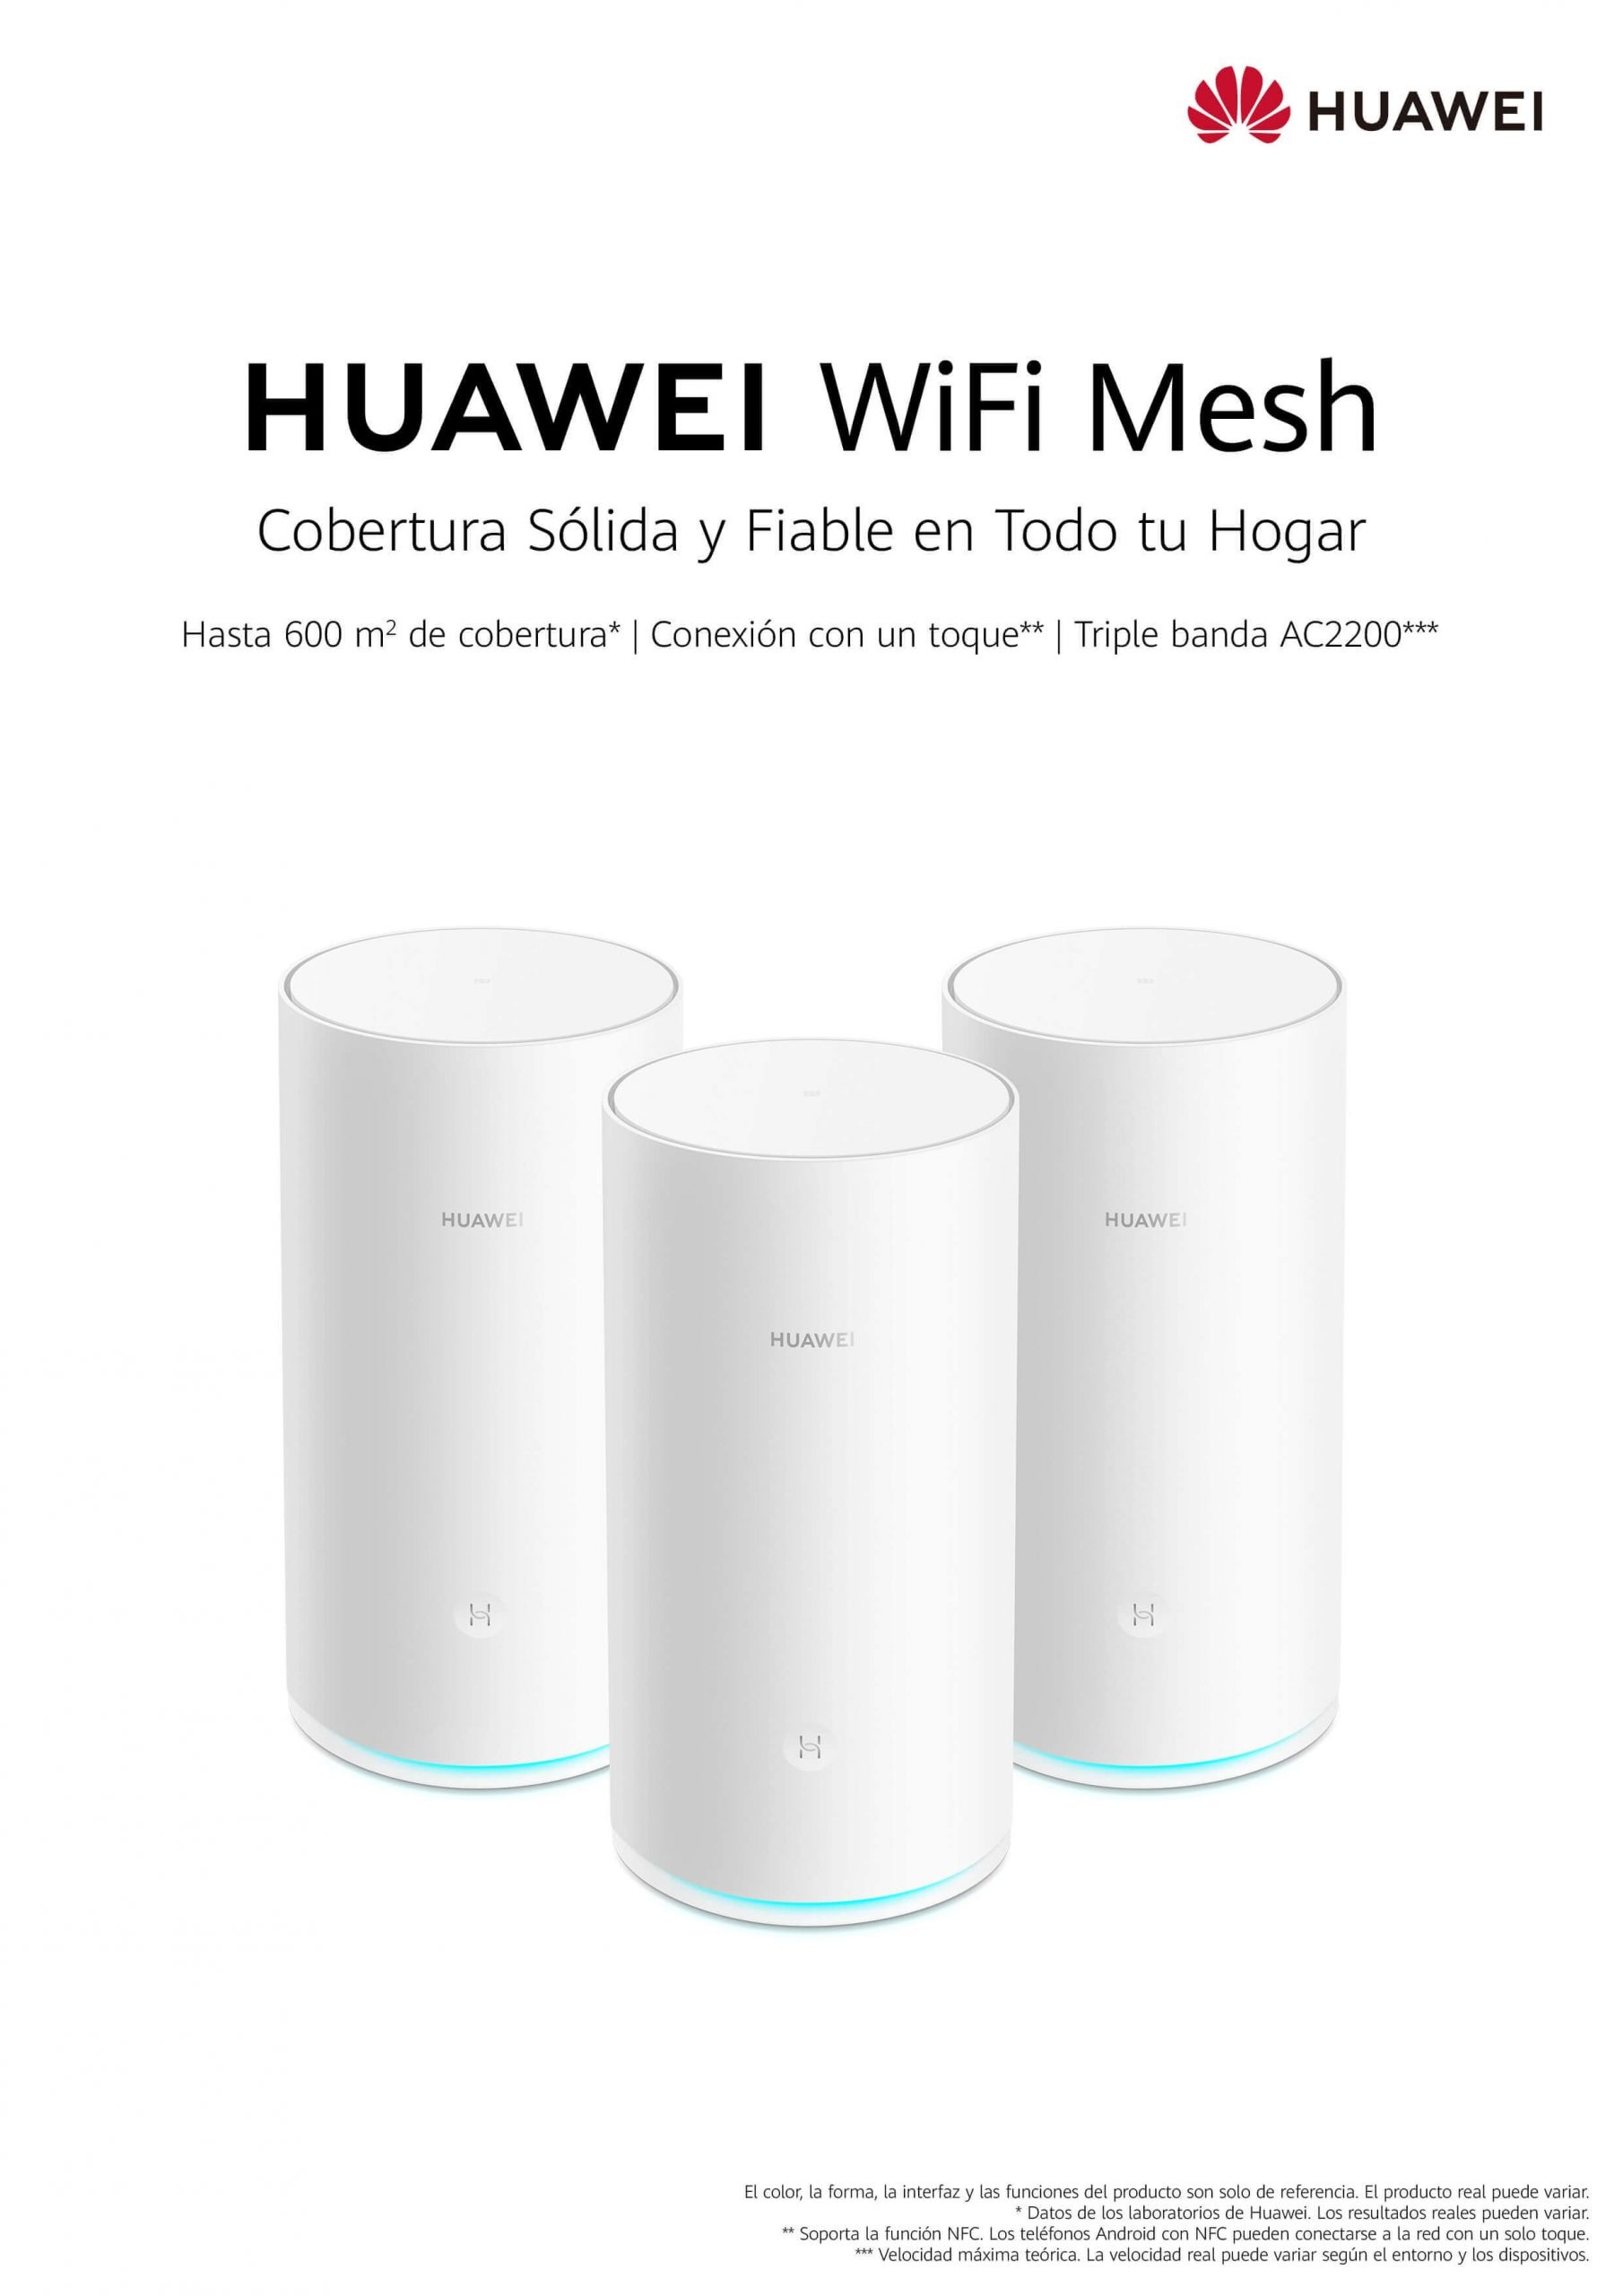 Huawei WiFi Mesh - La solución que necesitas para resolver tus problemas de internet en casa